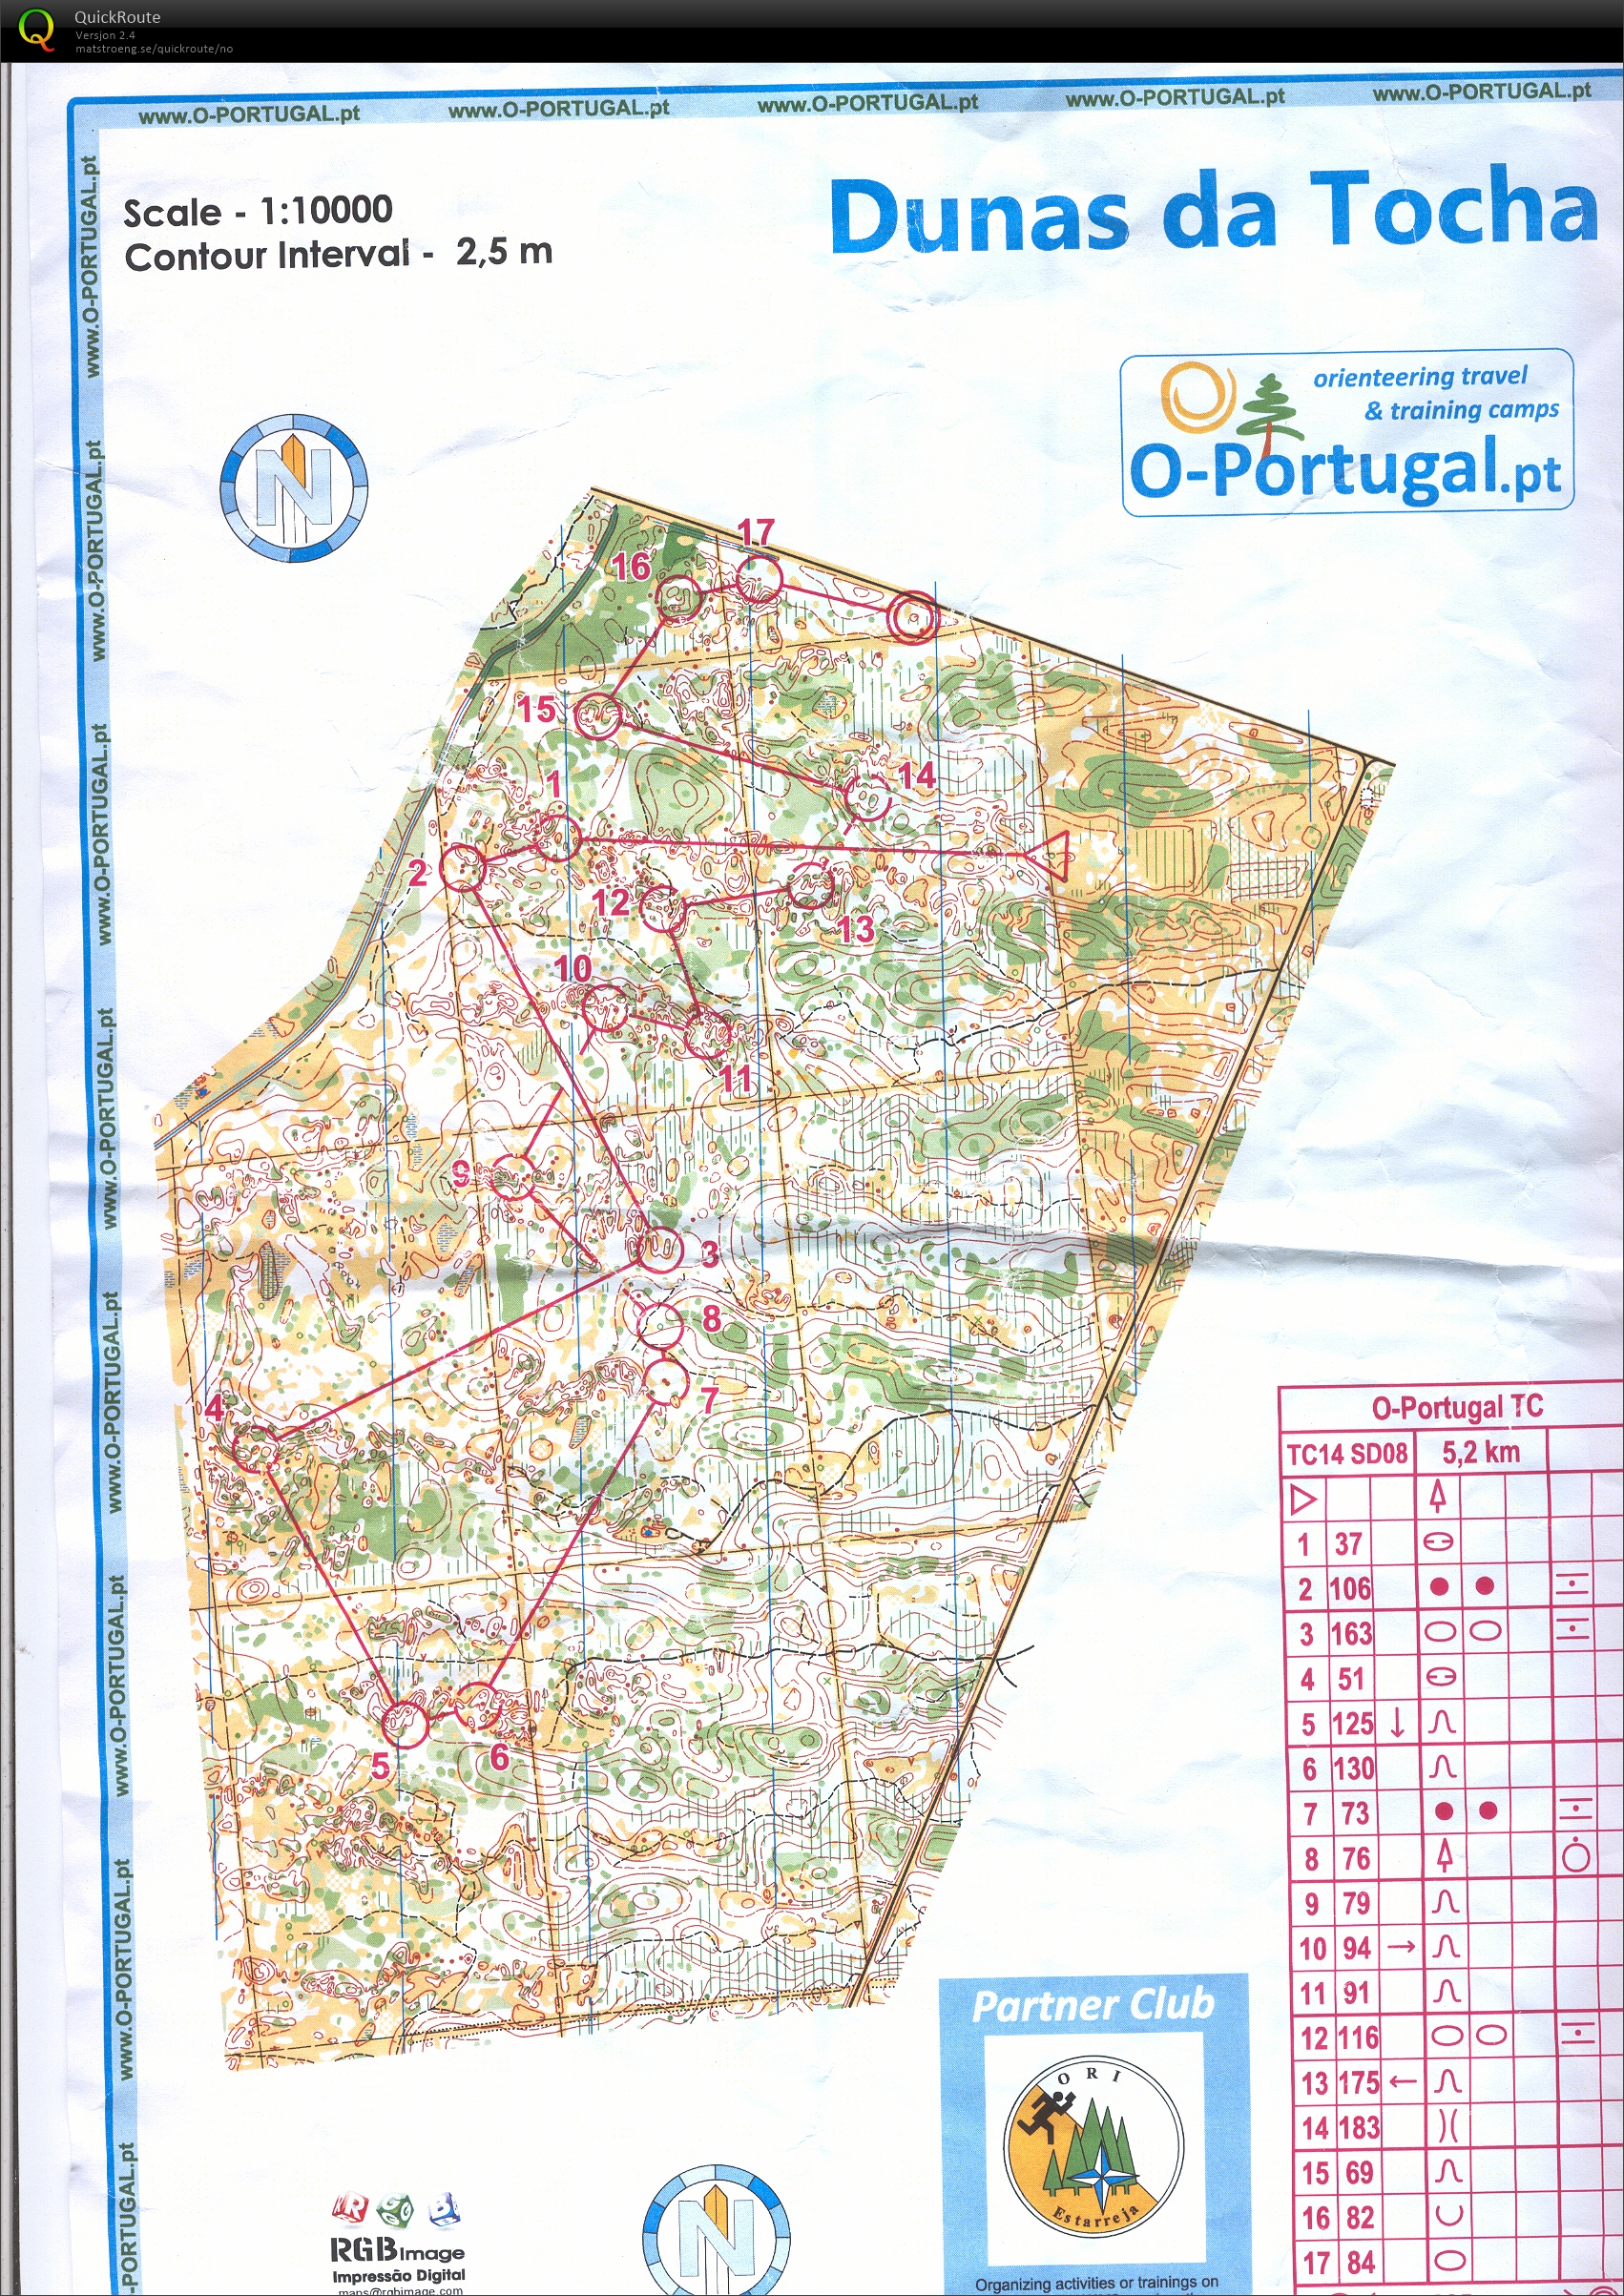 Portugal økt 6 (22.01.2014)